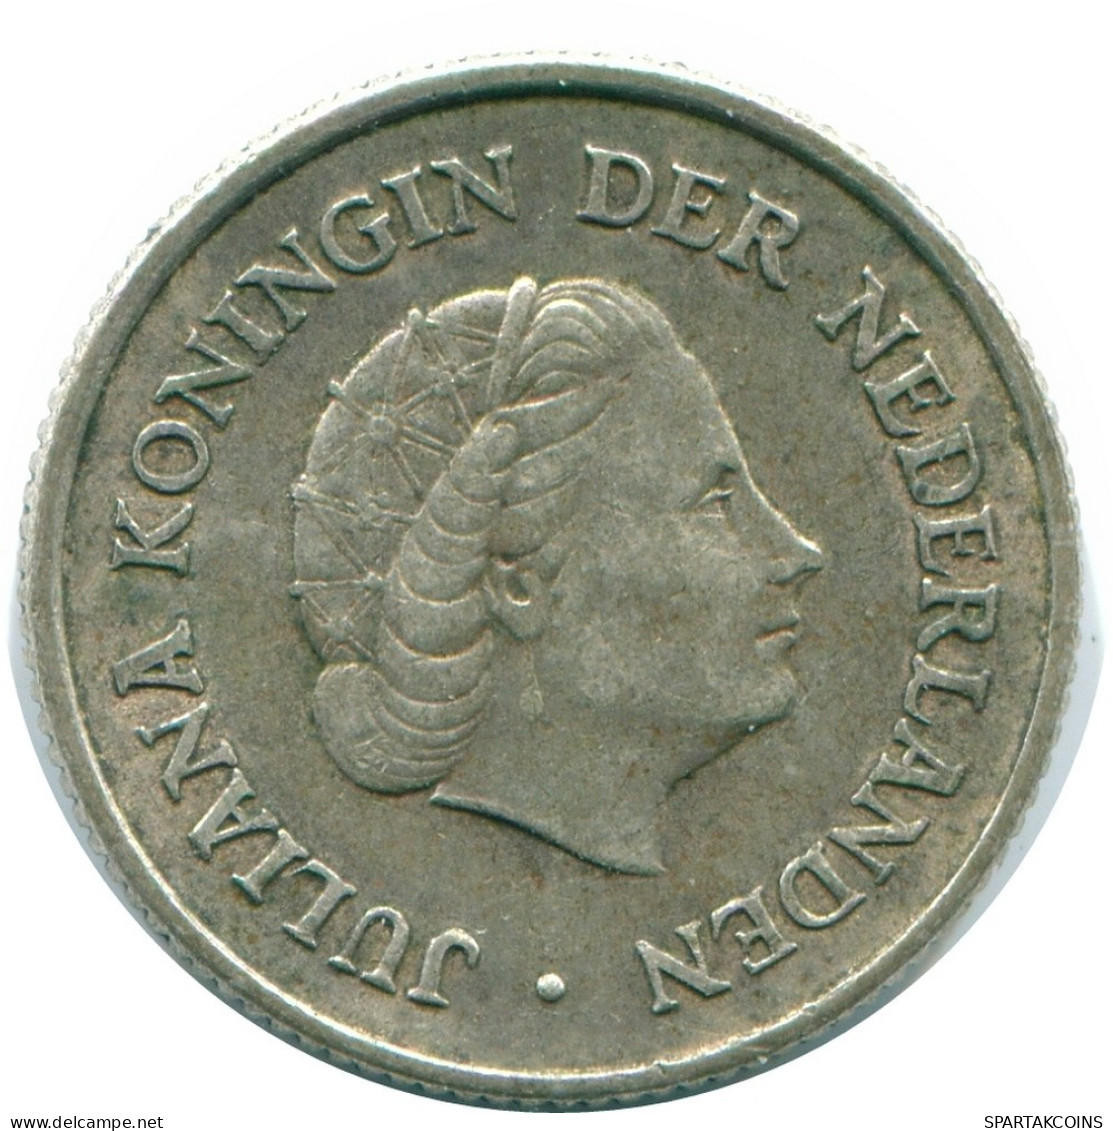 1/4 GULDEN 1965 NIEDERLÄNDISCHE ANTILLEN SILBER Koloniale Münze #NL11382.4.D.A - Antilles Néerlandaises